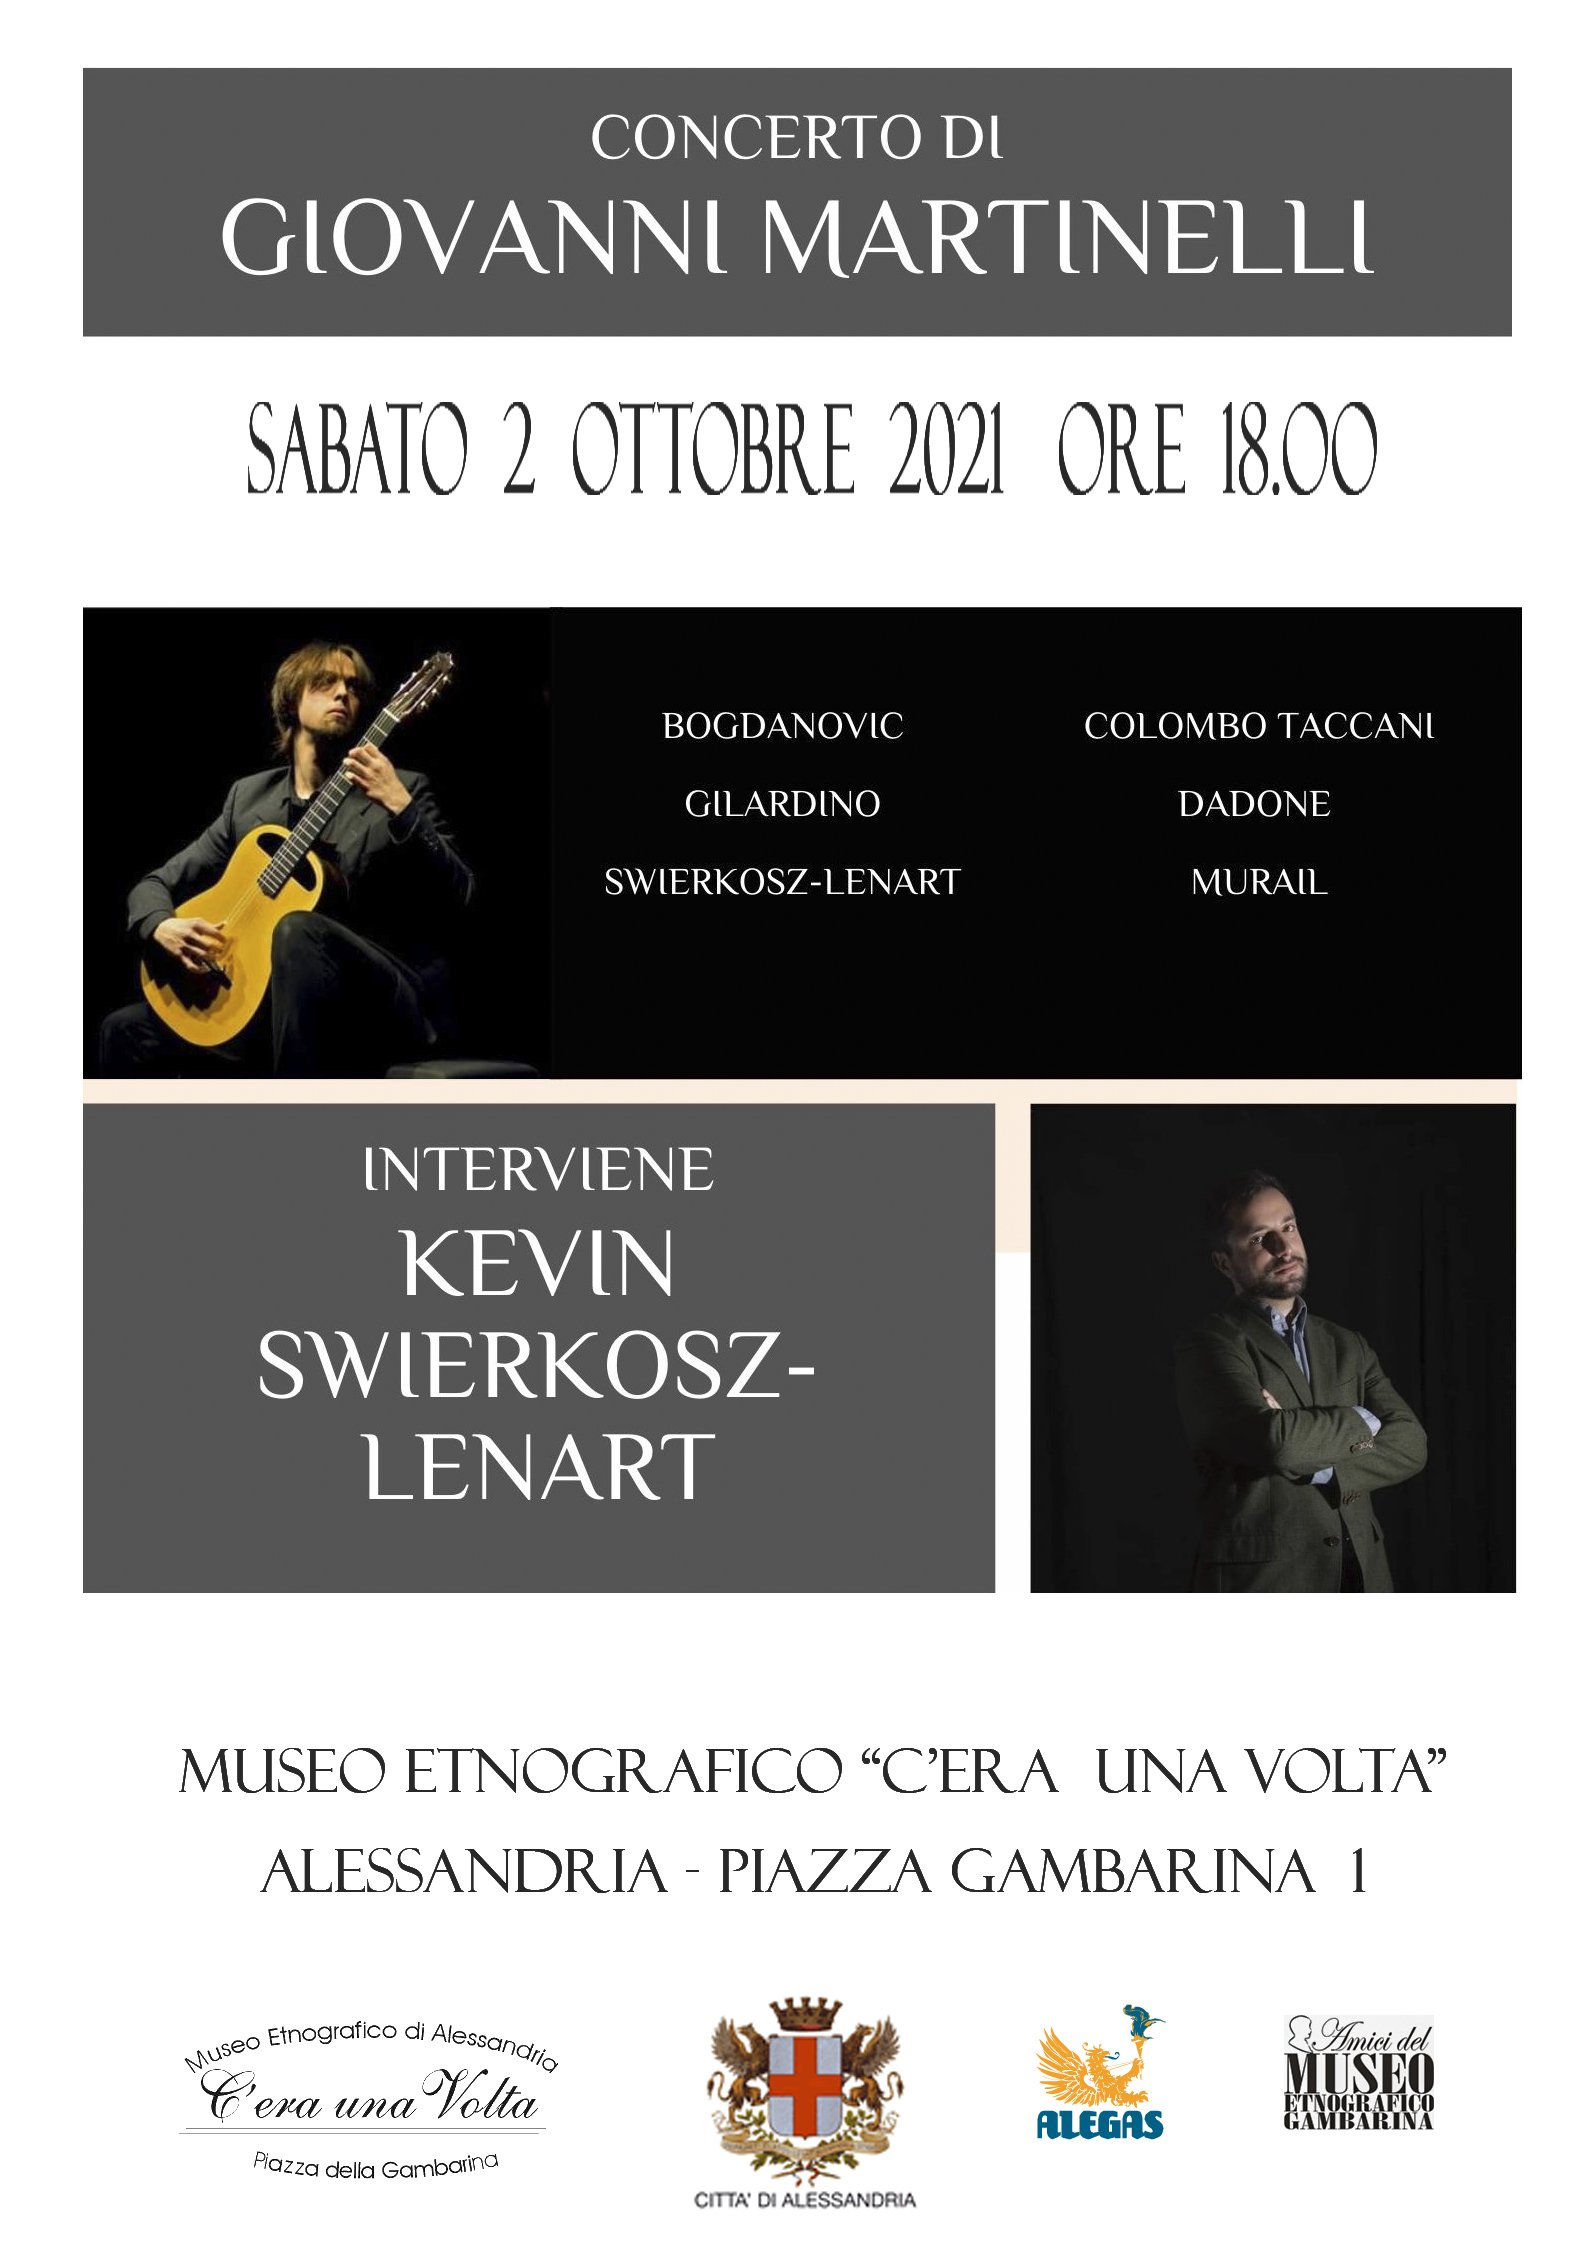 Il 2 ottobre concerto di Giovanni Martinelli al Museo della Gambarina